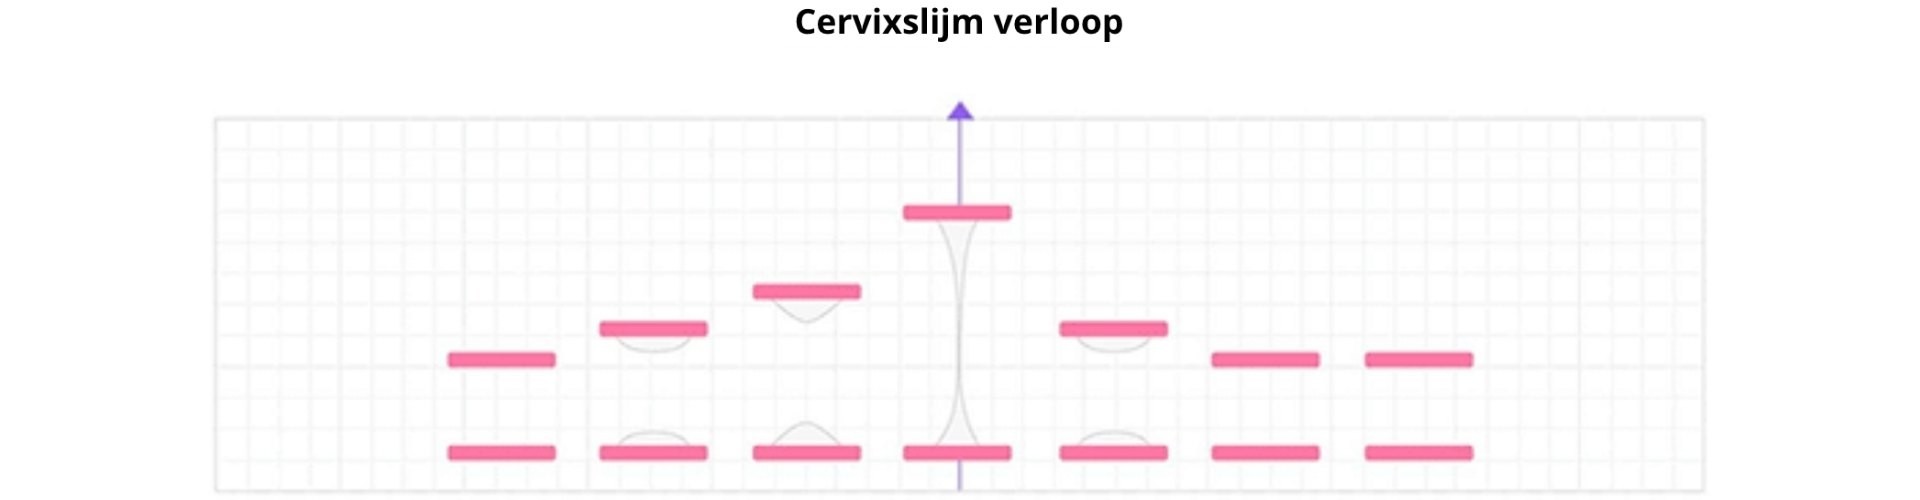 Grafische weergave van de verandering van het cervixslijm gedurende de cyclus | DICHA